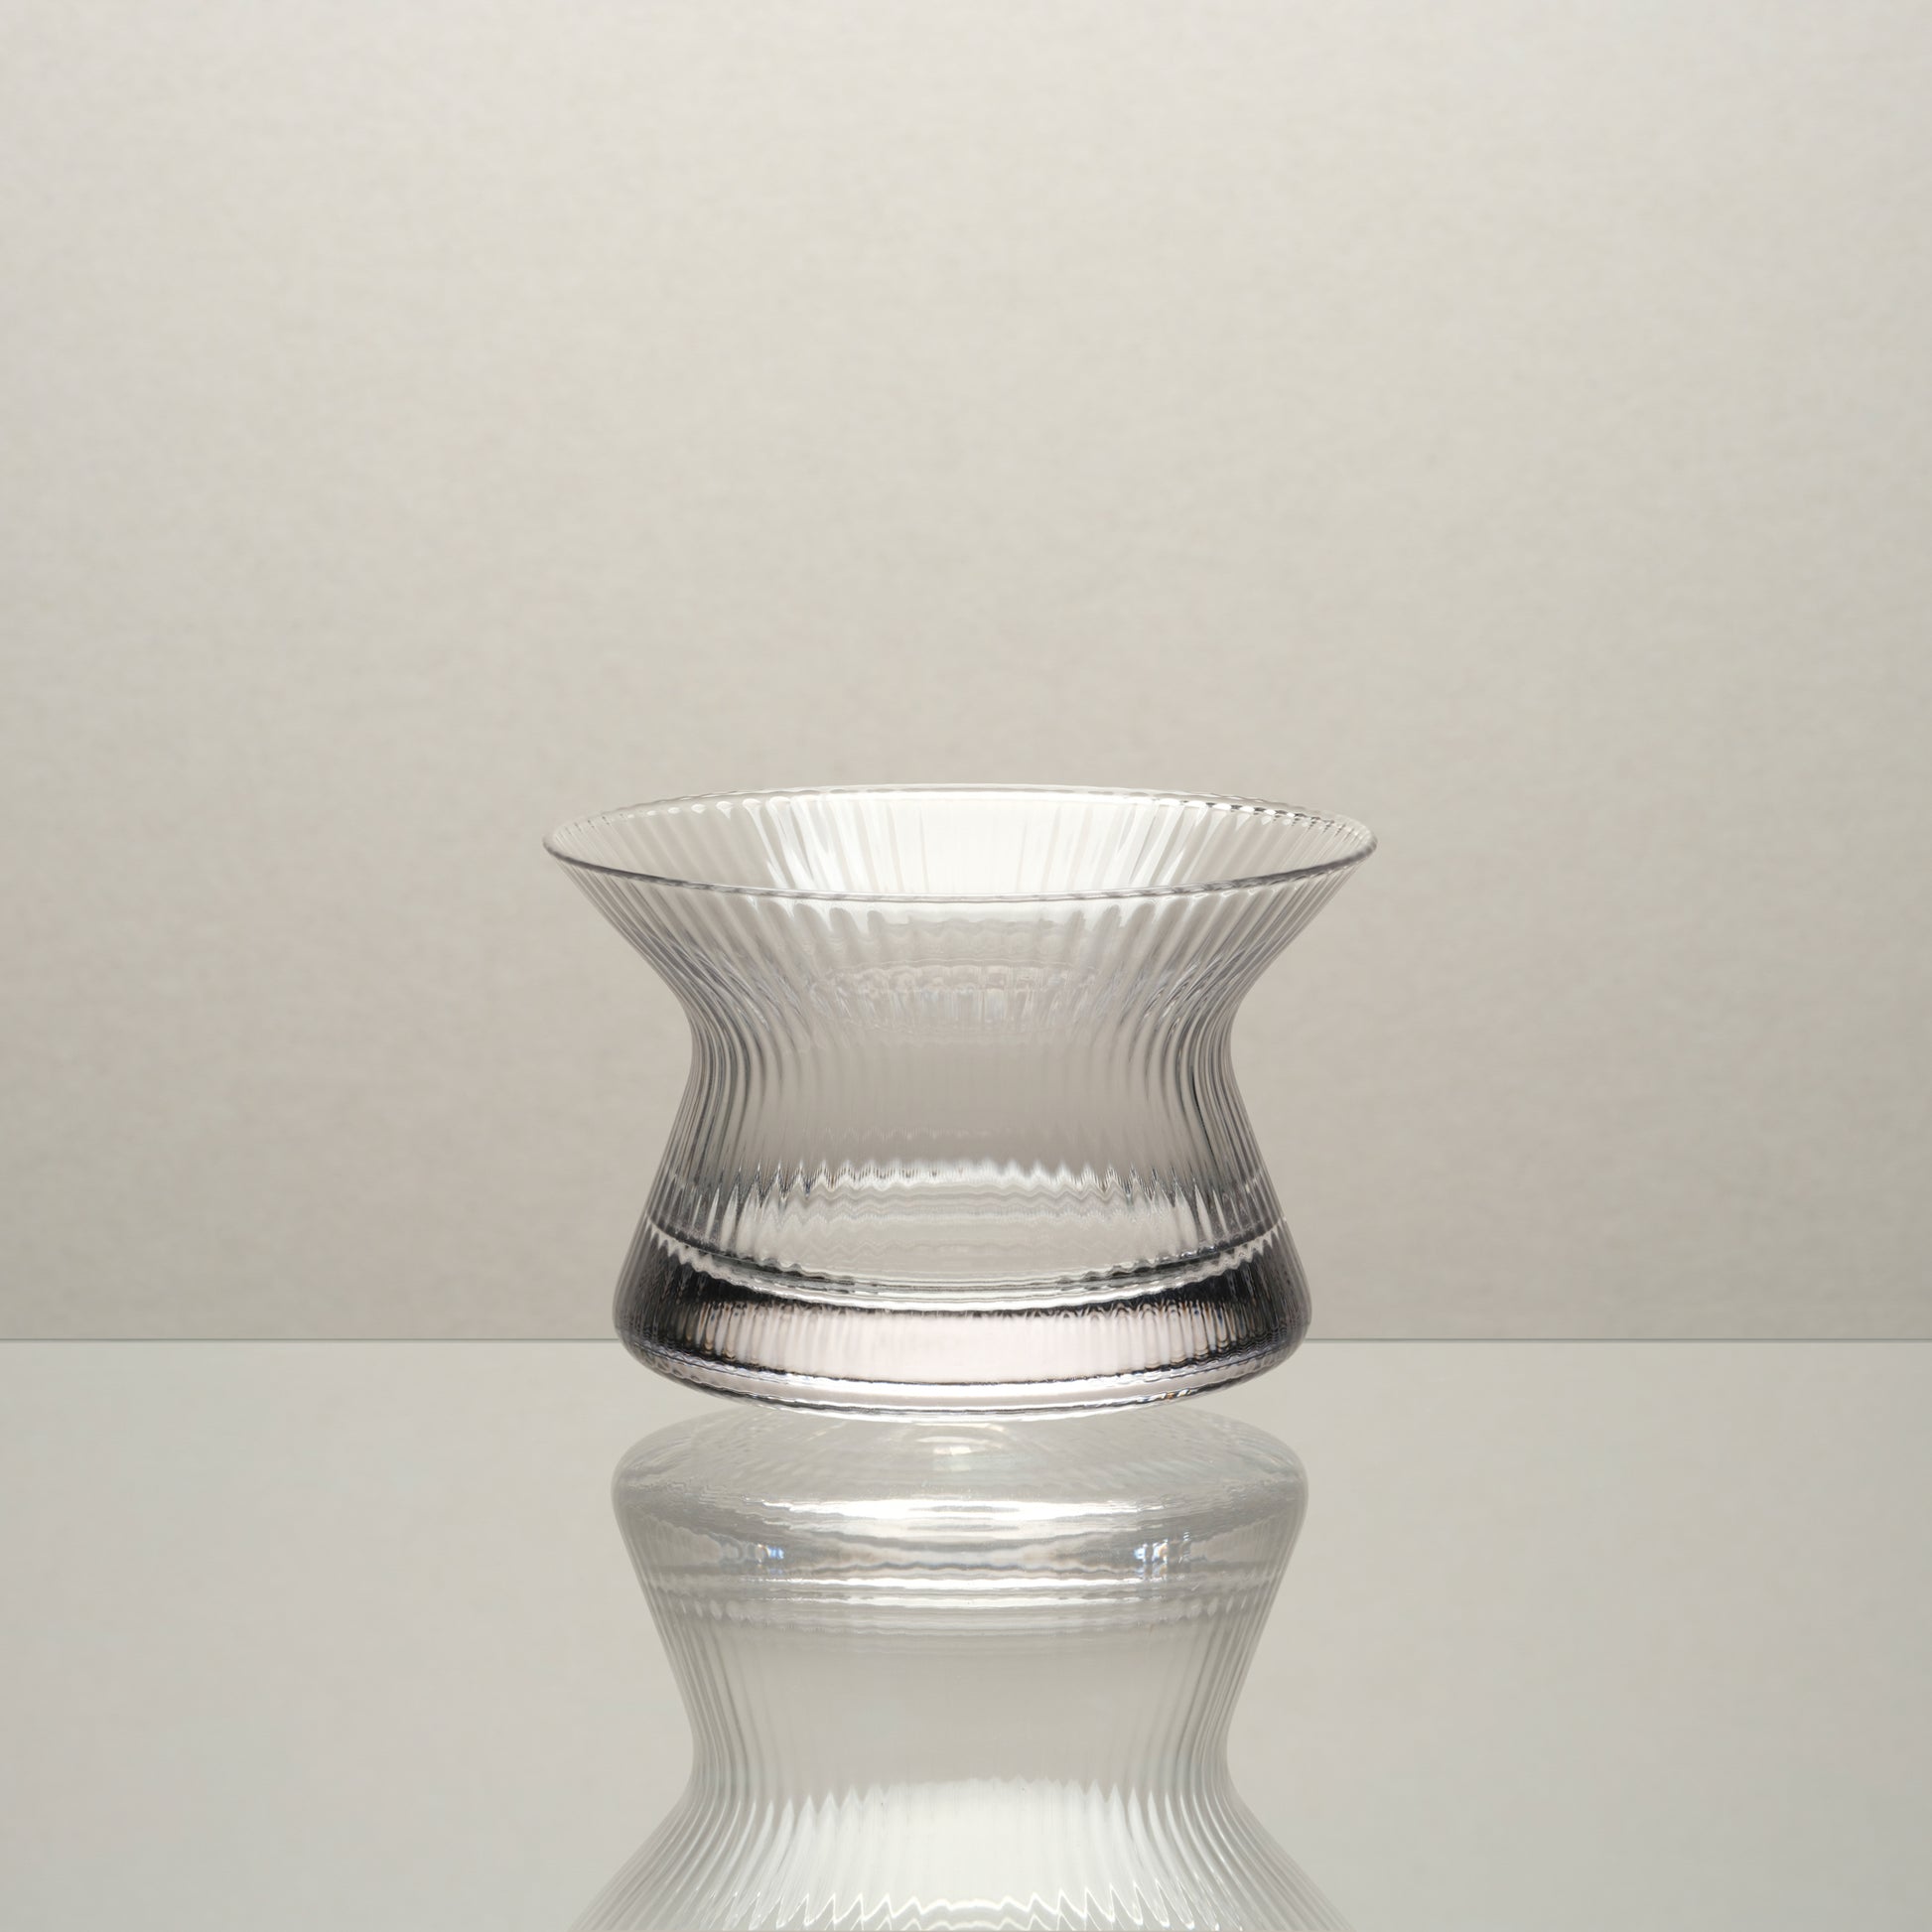 Japan Inspired Hanyu Glass